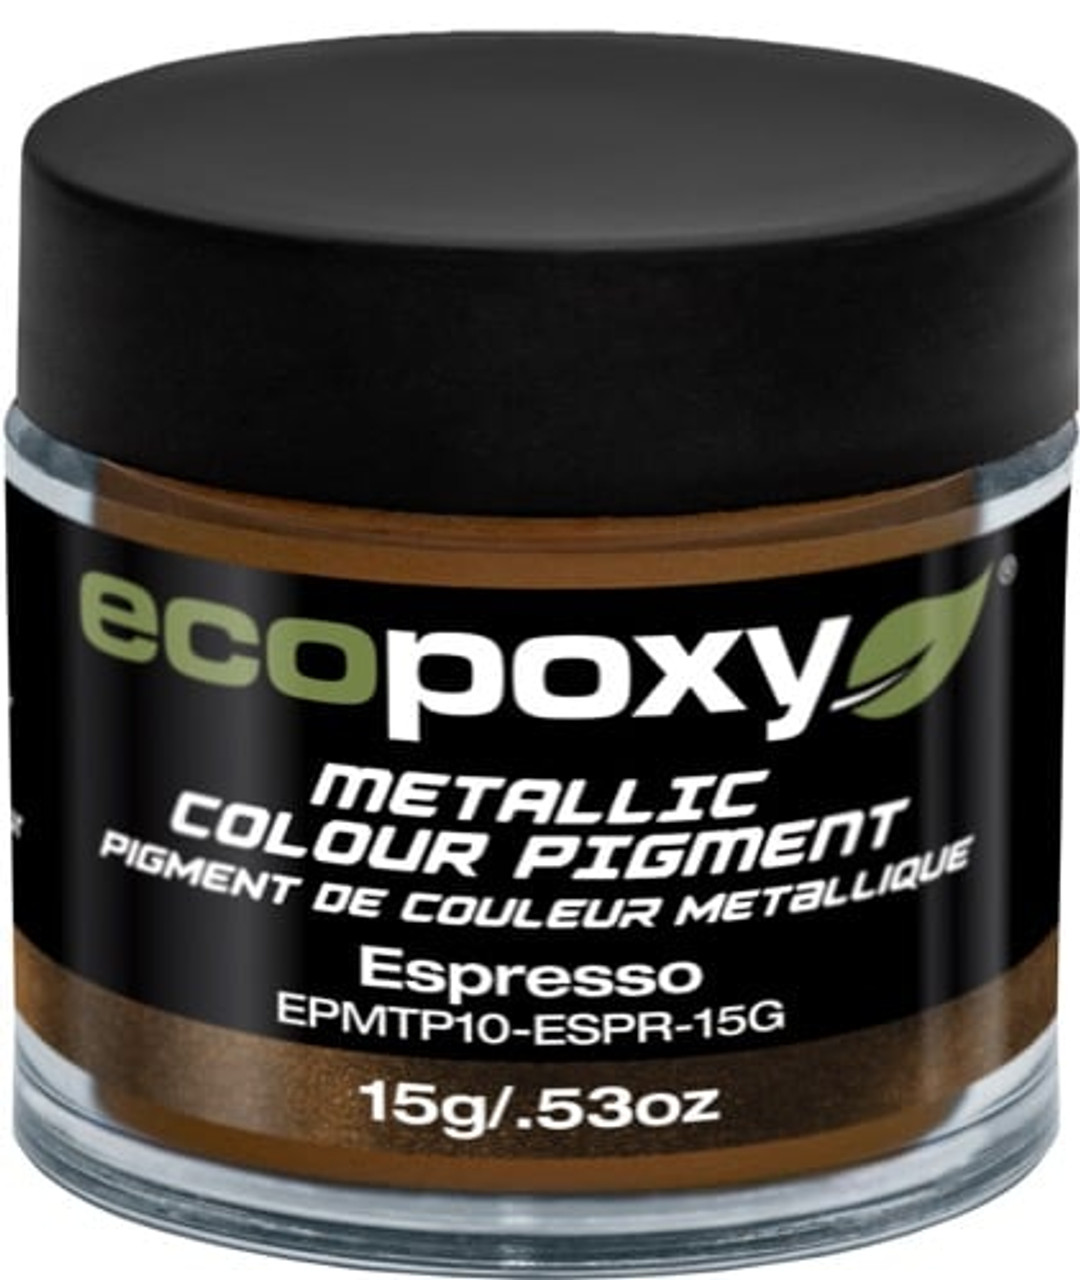 EcoPoxy - 15g Metallic ColorPigment - Espresso (628199908268)